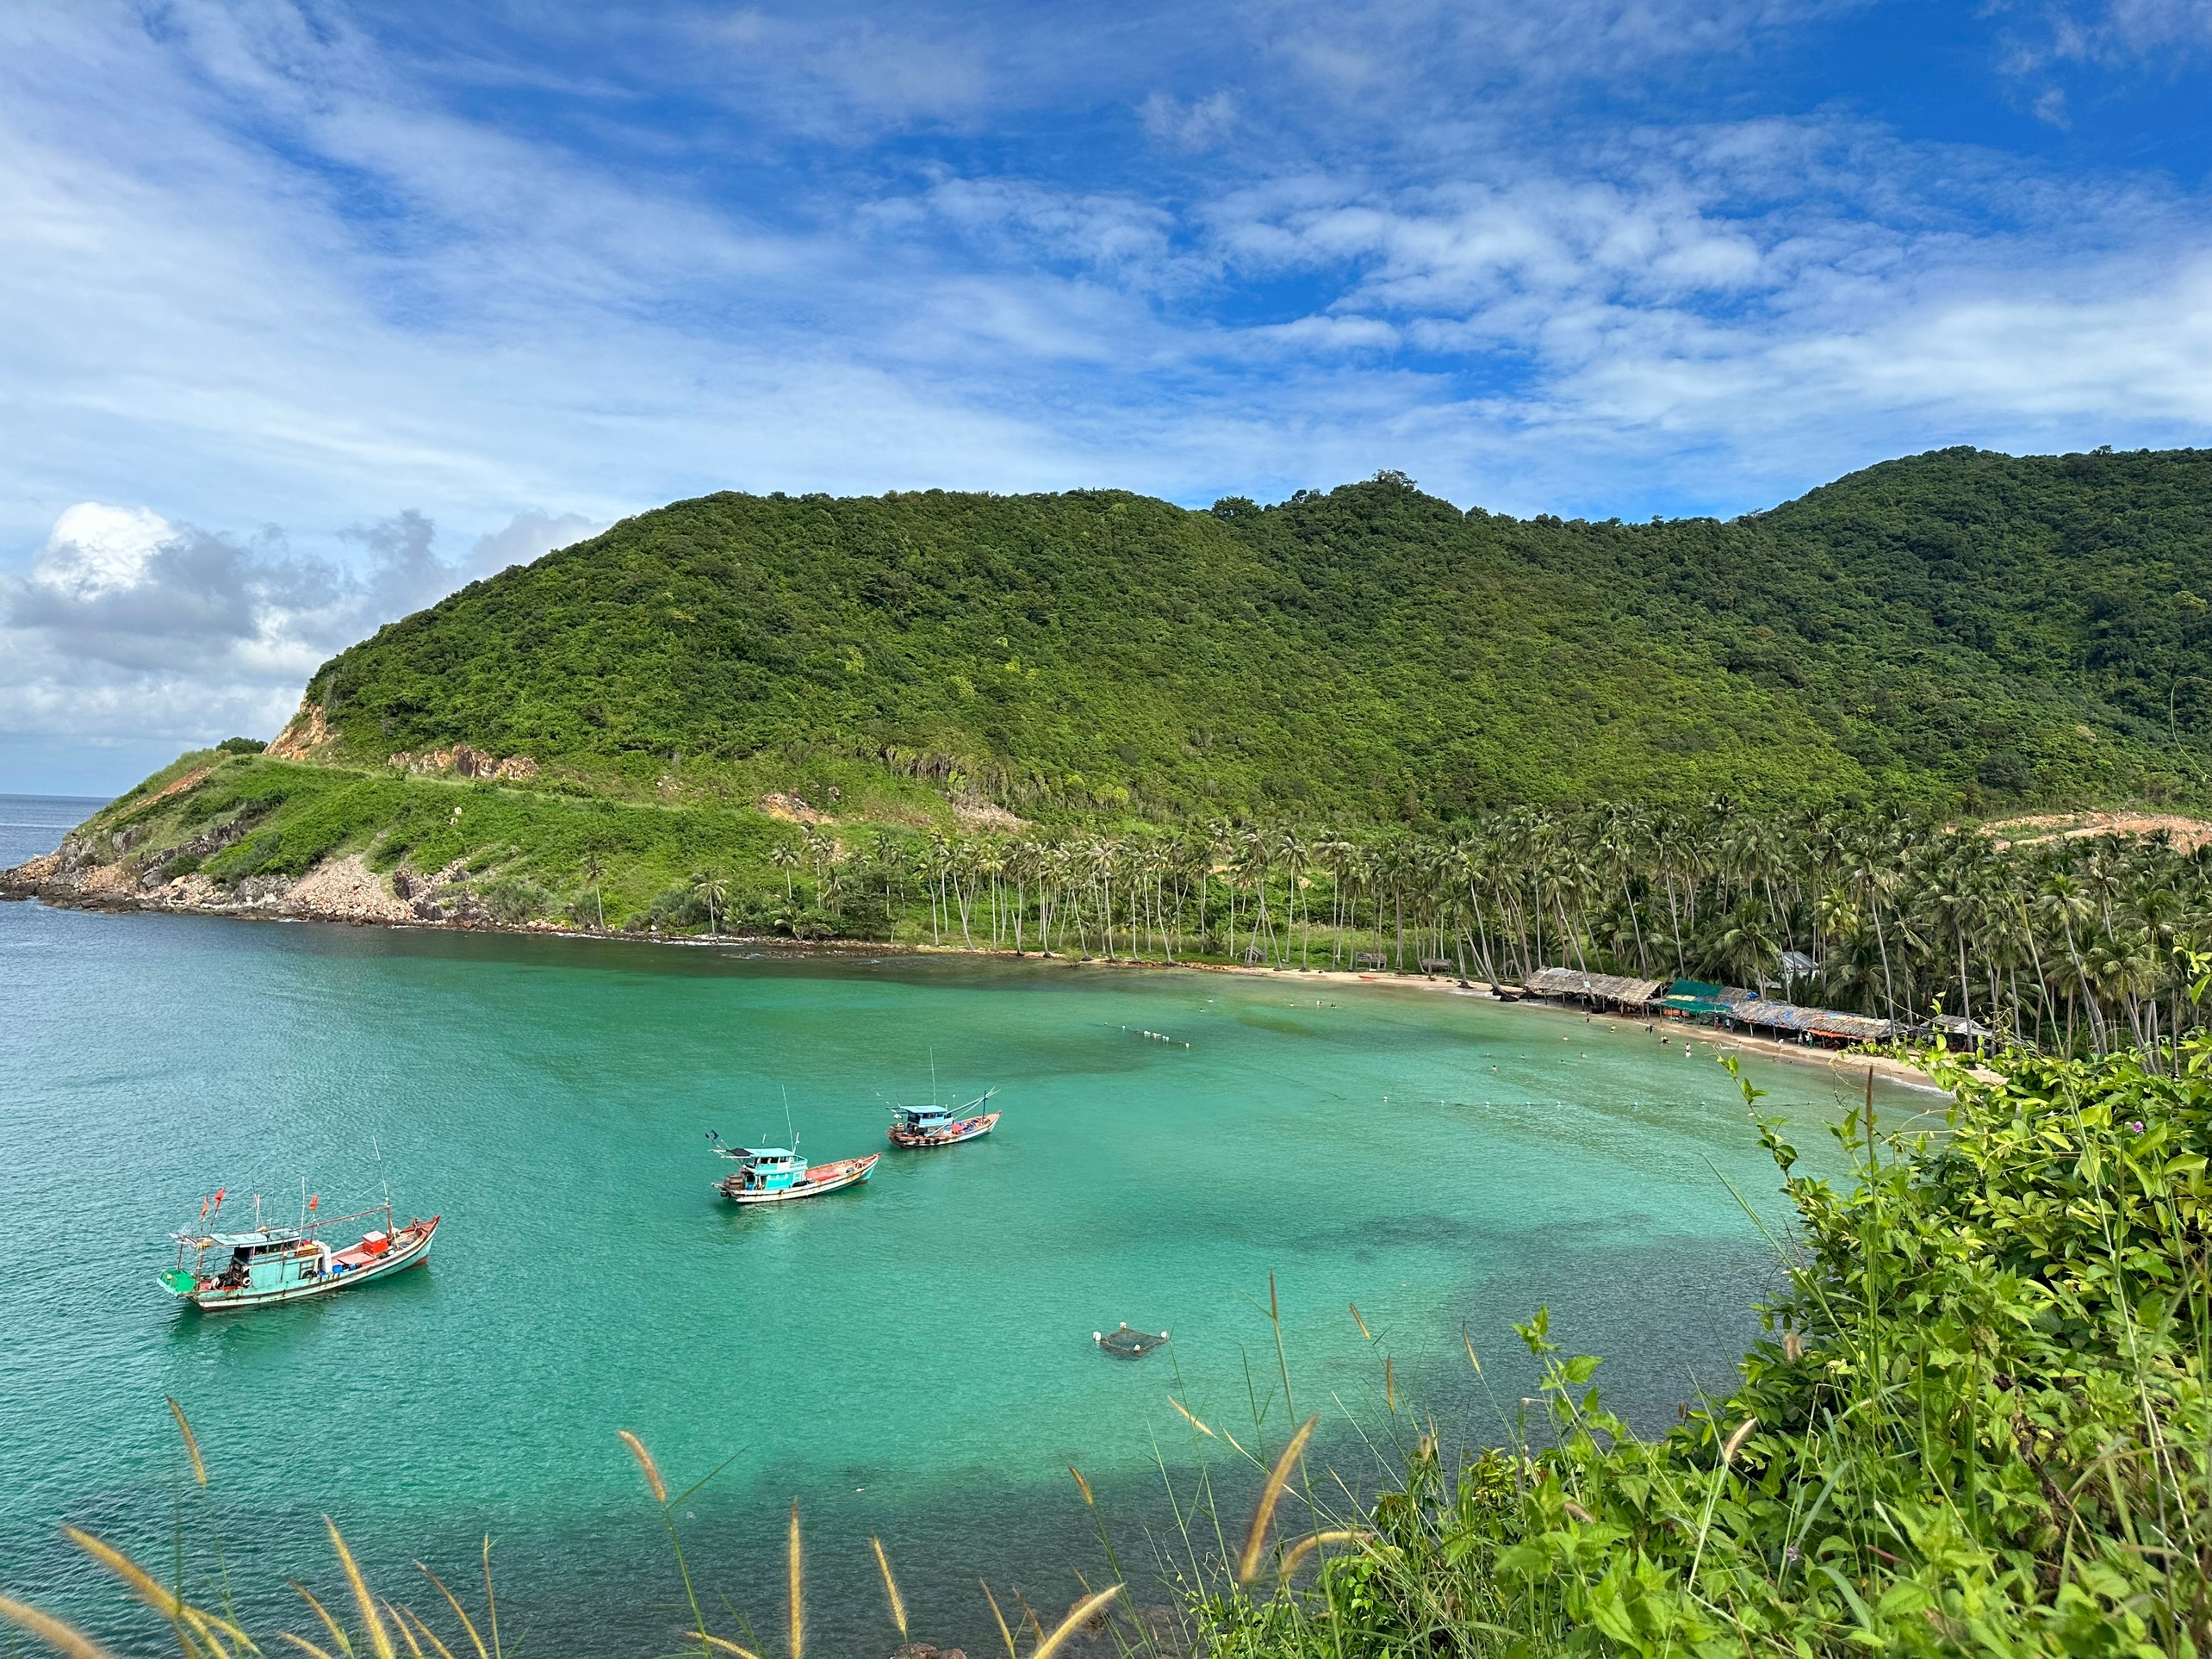 Du lịch đảo Nam Du: Cẩm nang từ A đến Z (update tháng 11/2022) - iVIVU.com